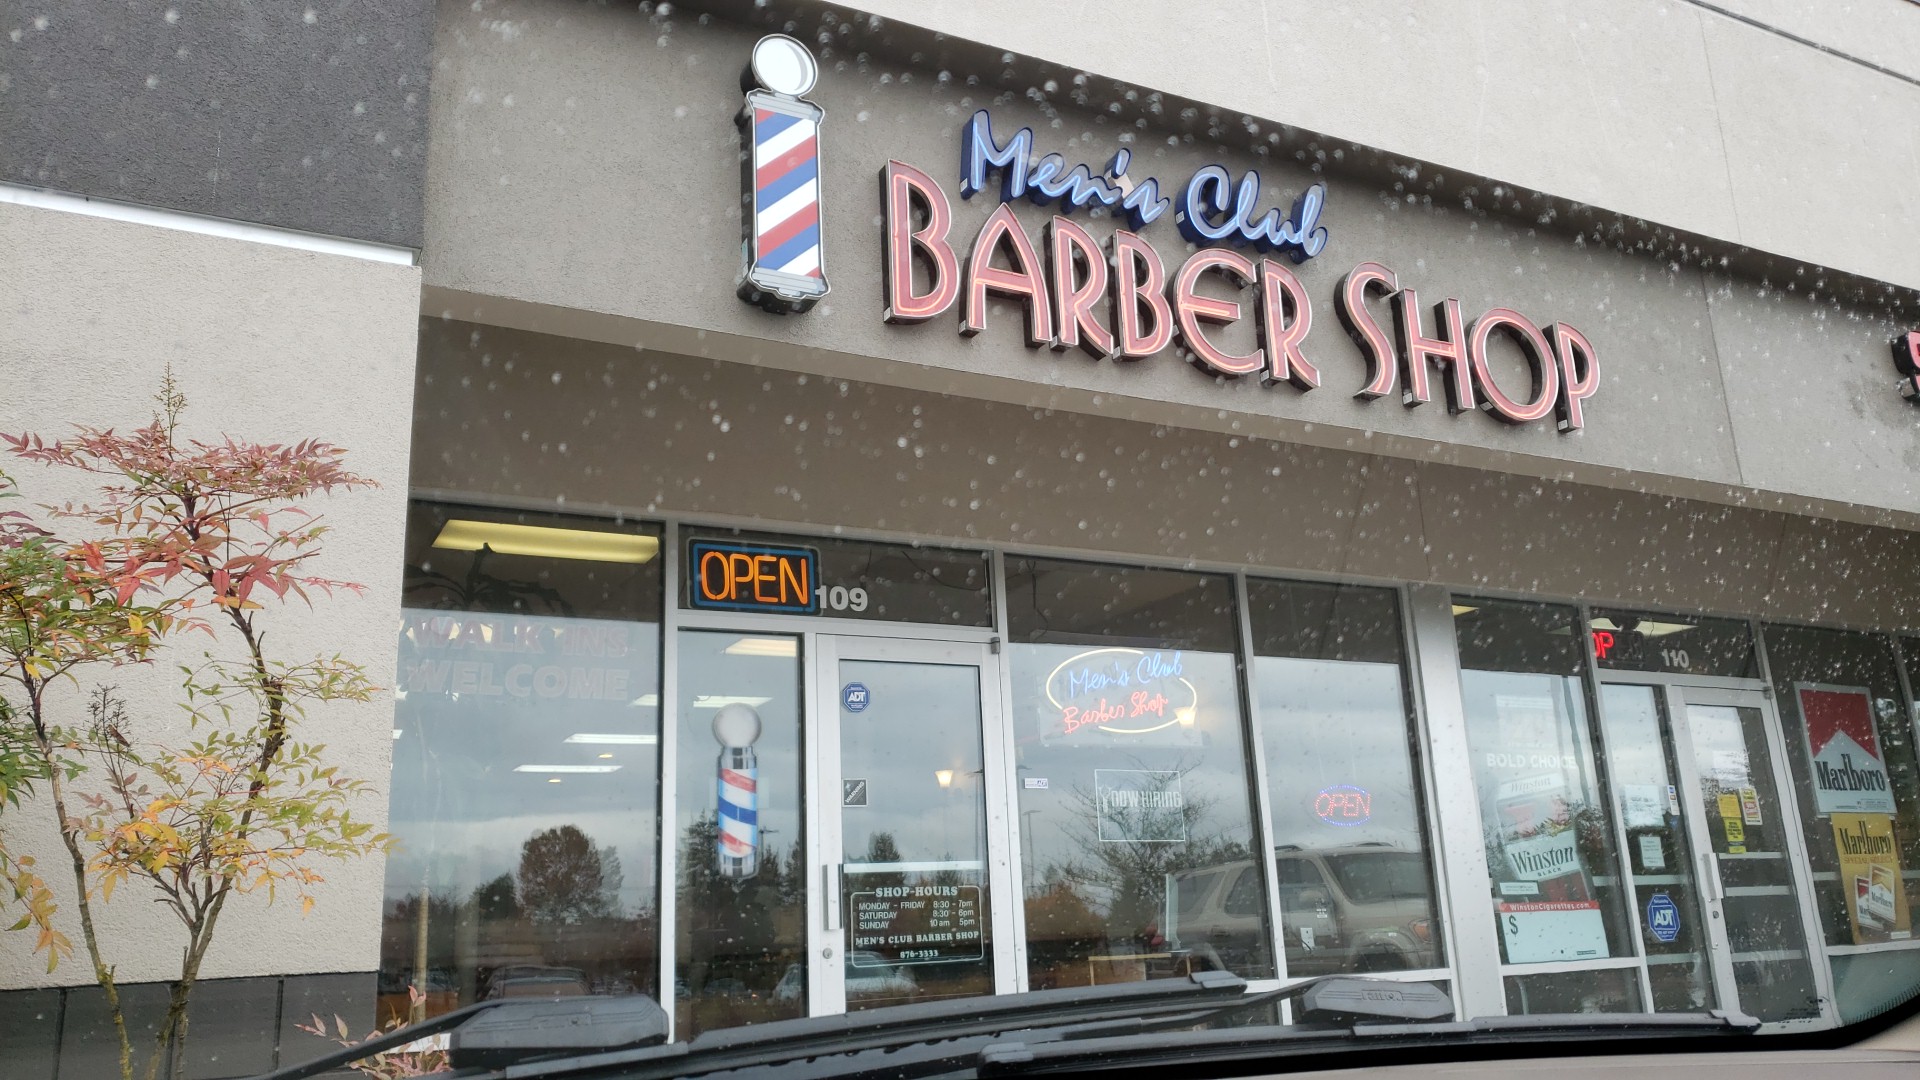 Men's Club Barber Shop